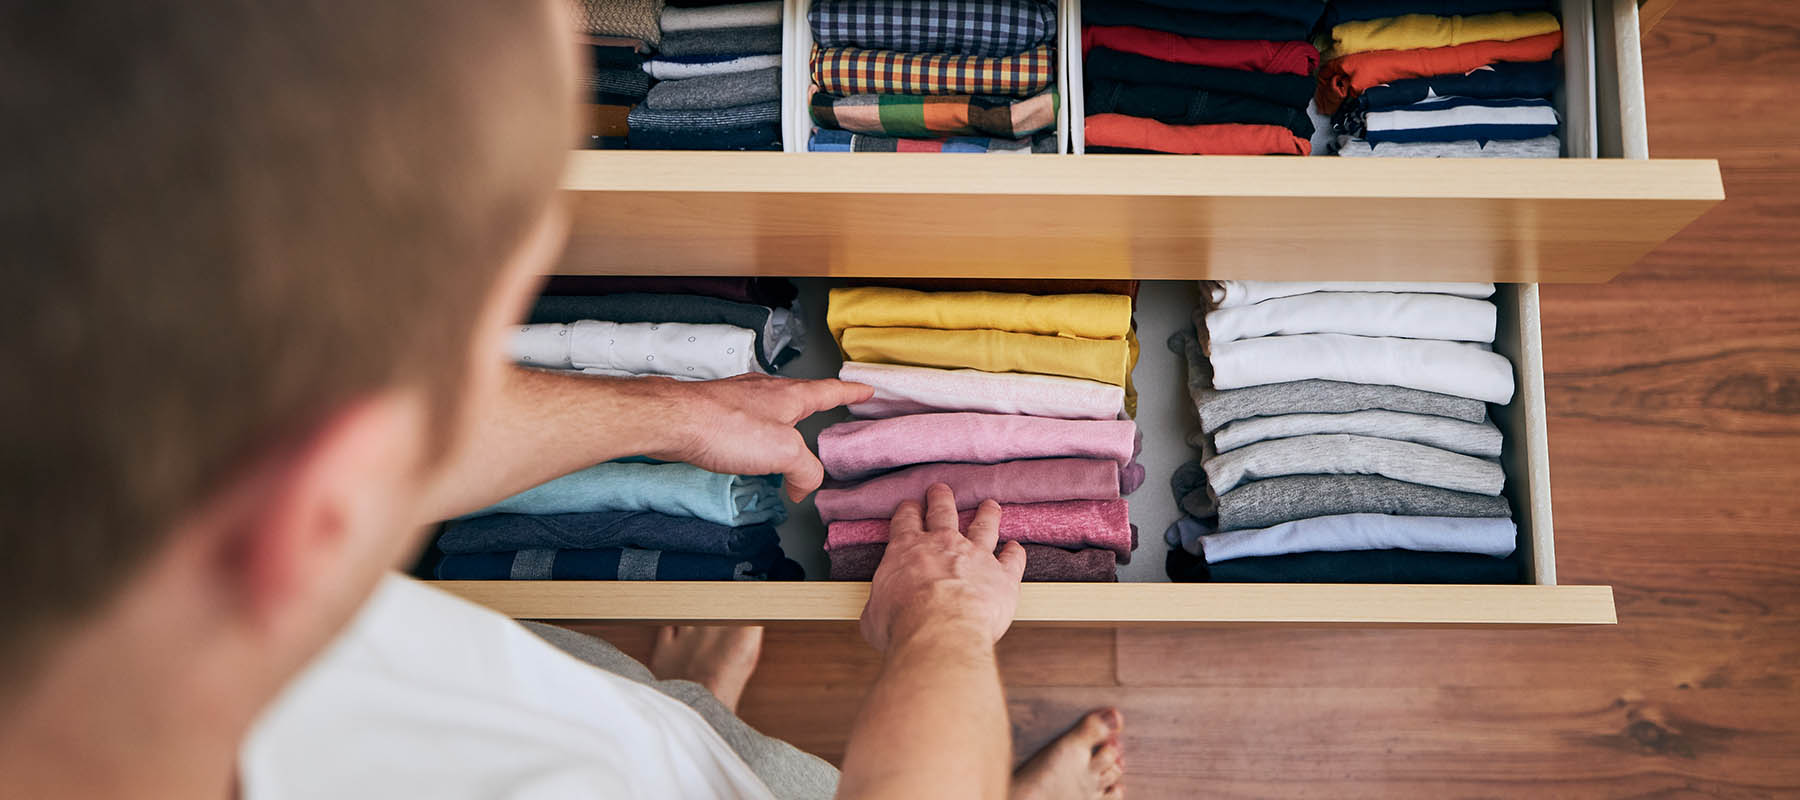 man organizing shirts in drawer